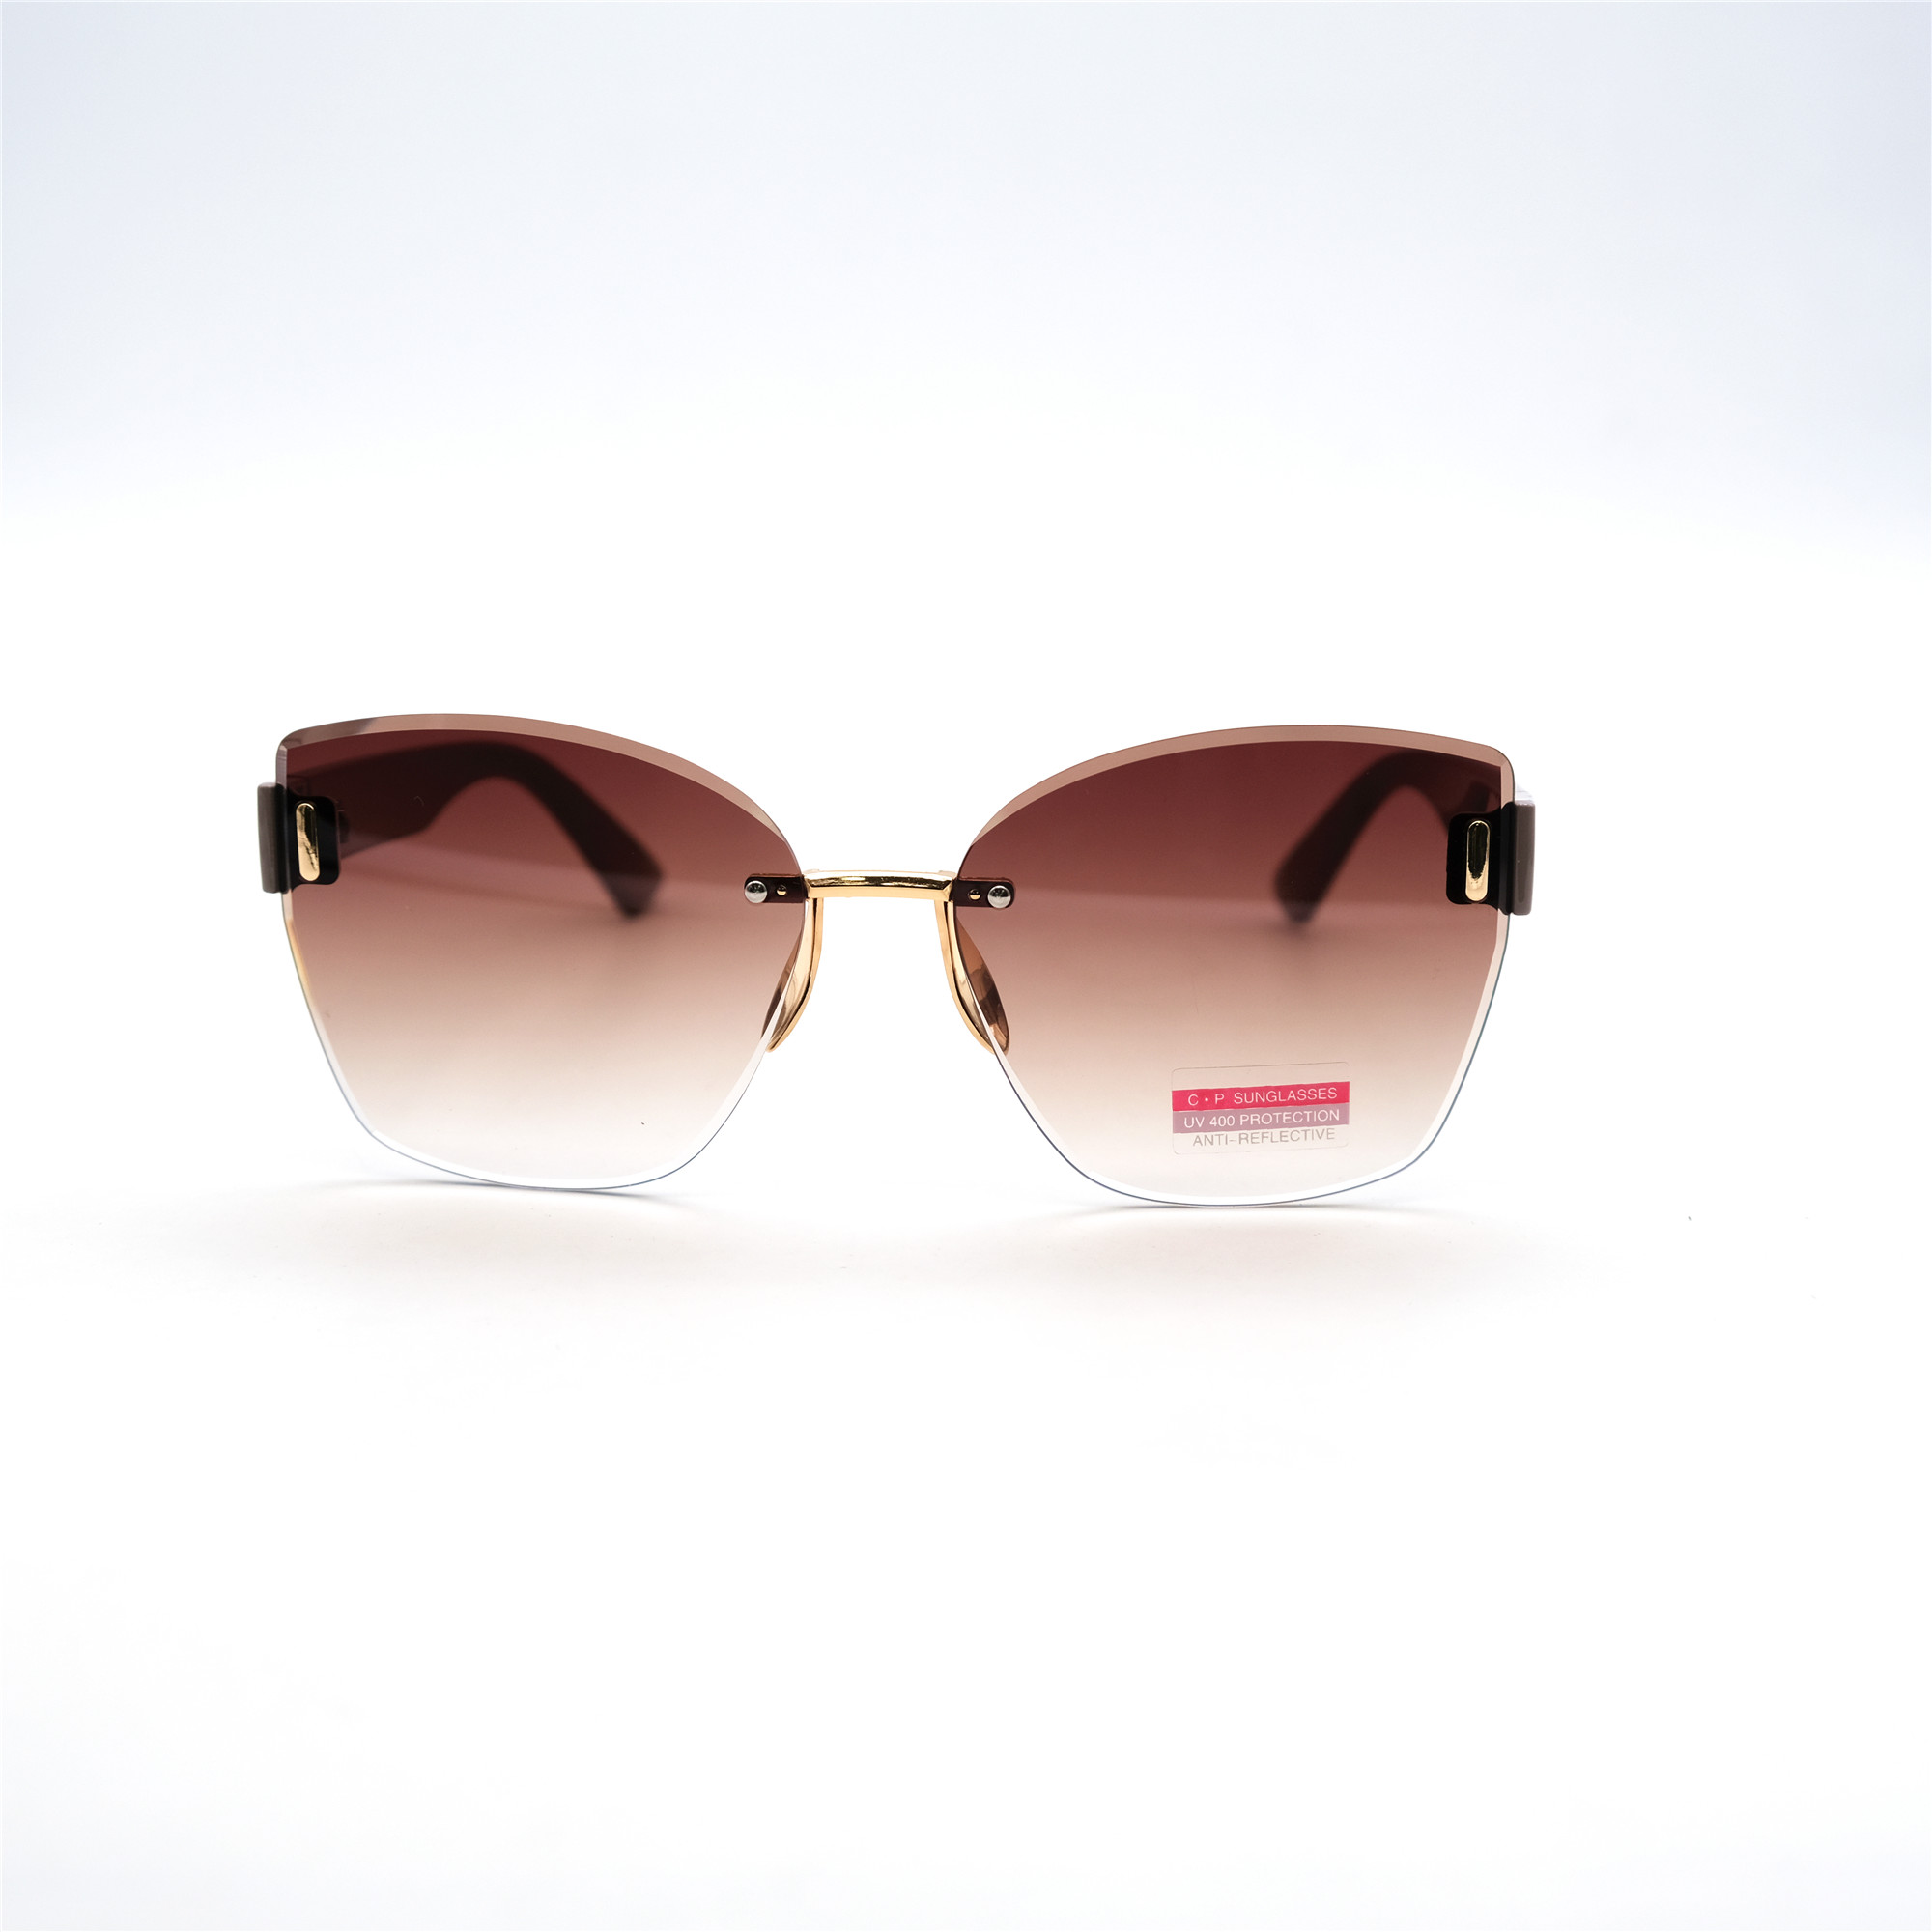  Солнцезащитные очки картинка Женские Caipai  Классический 8149-4-C3 